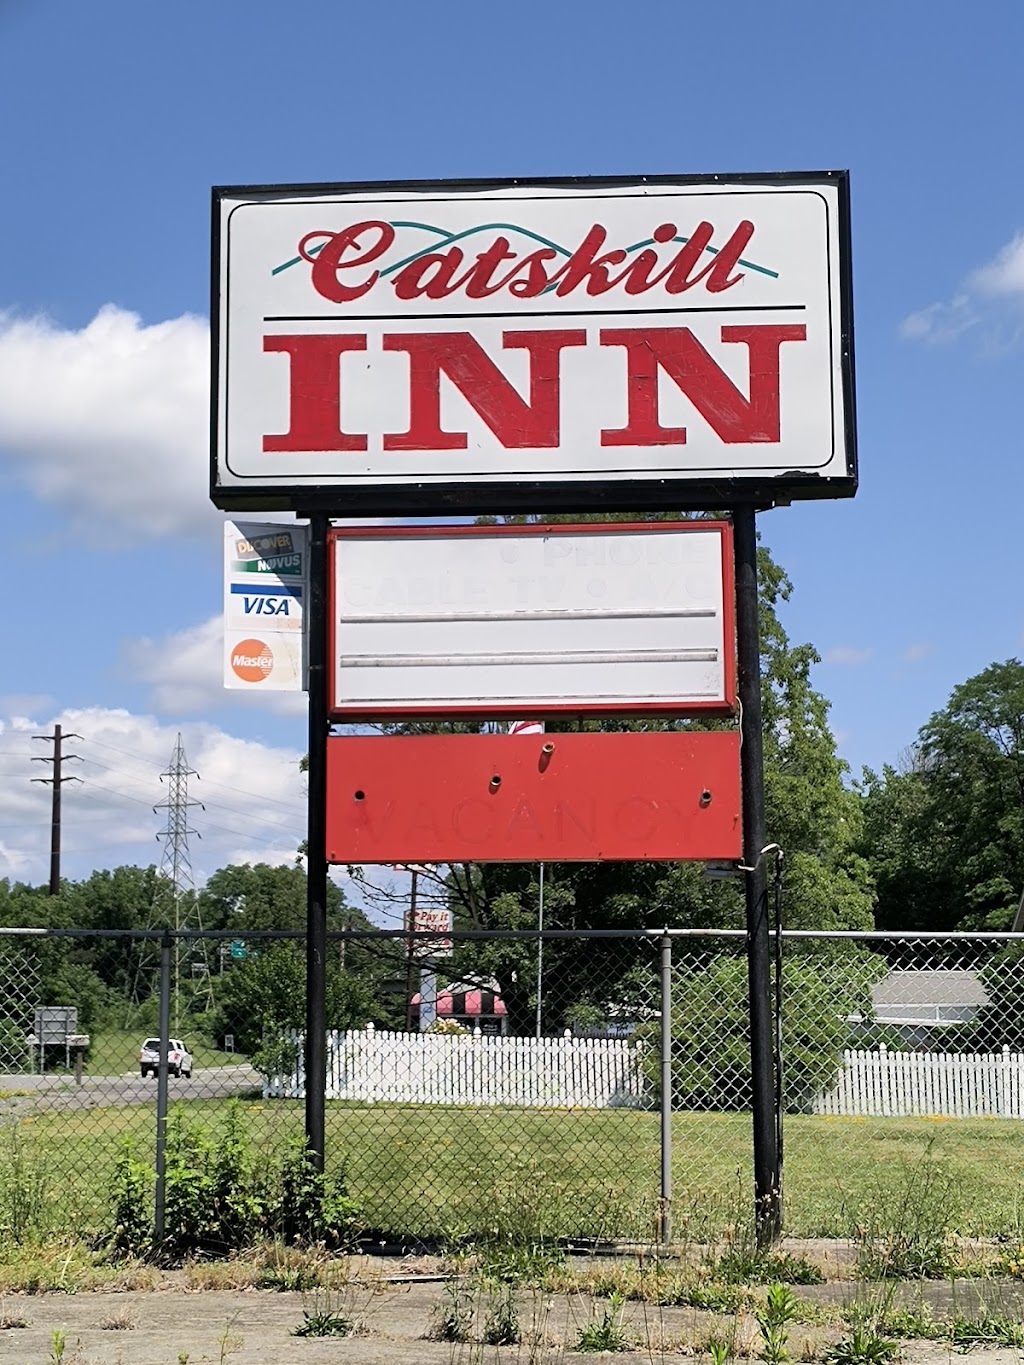 Catskill Inn | 7848 Rte 9W, Catskill, NY 12414 | Phone: (518) 943-3261